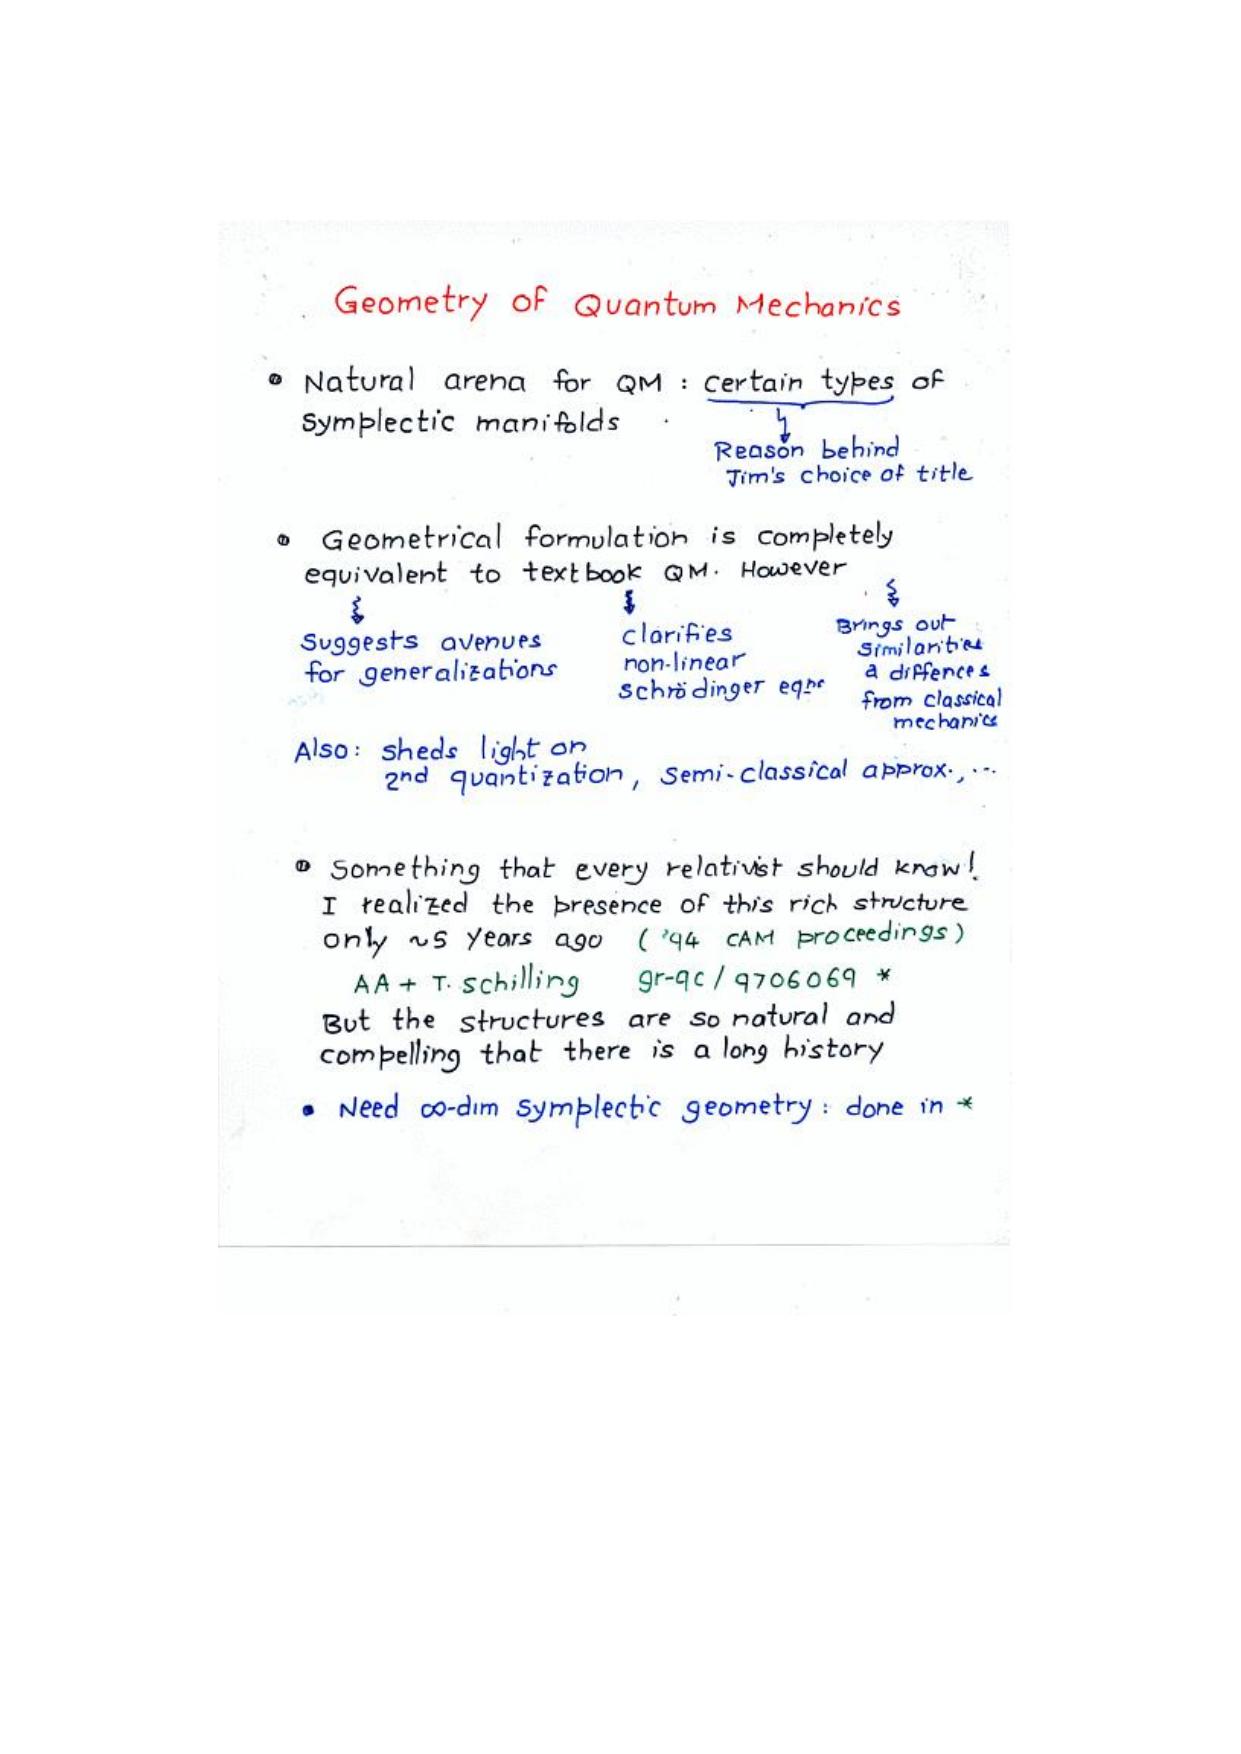 The Geometry of Quantum Mechanics by Ashtekar